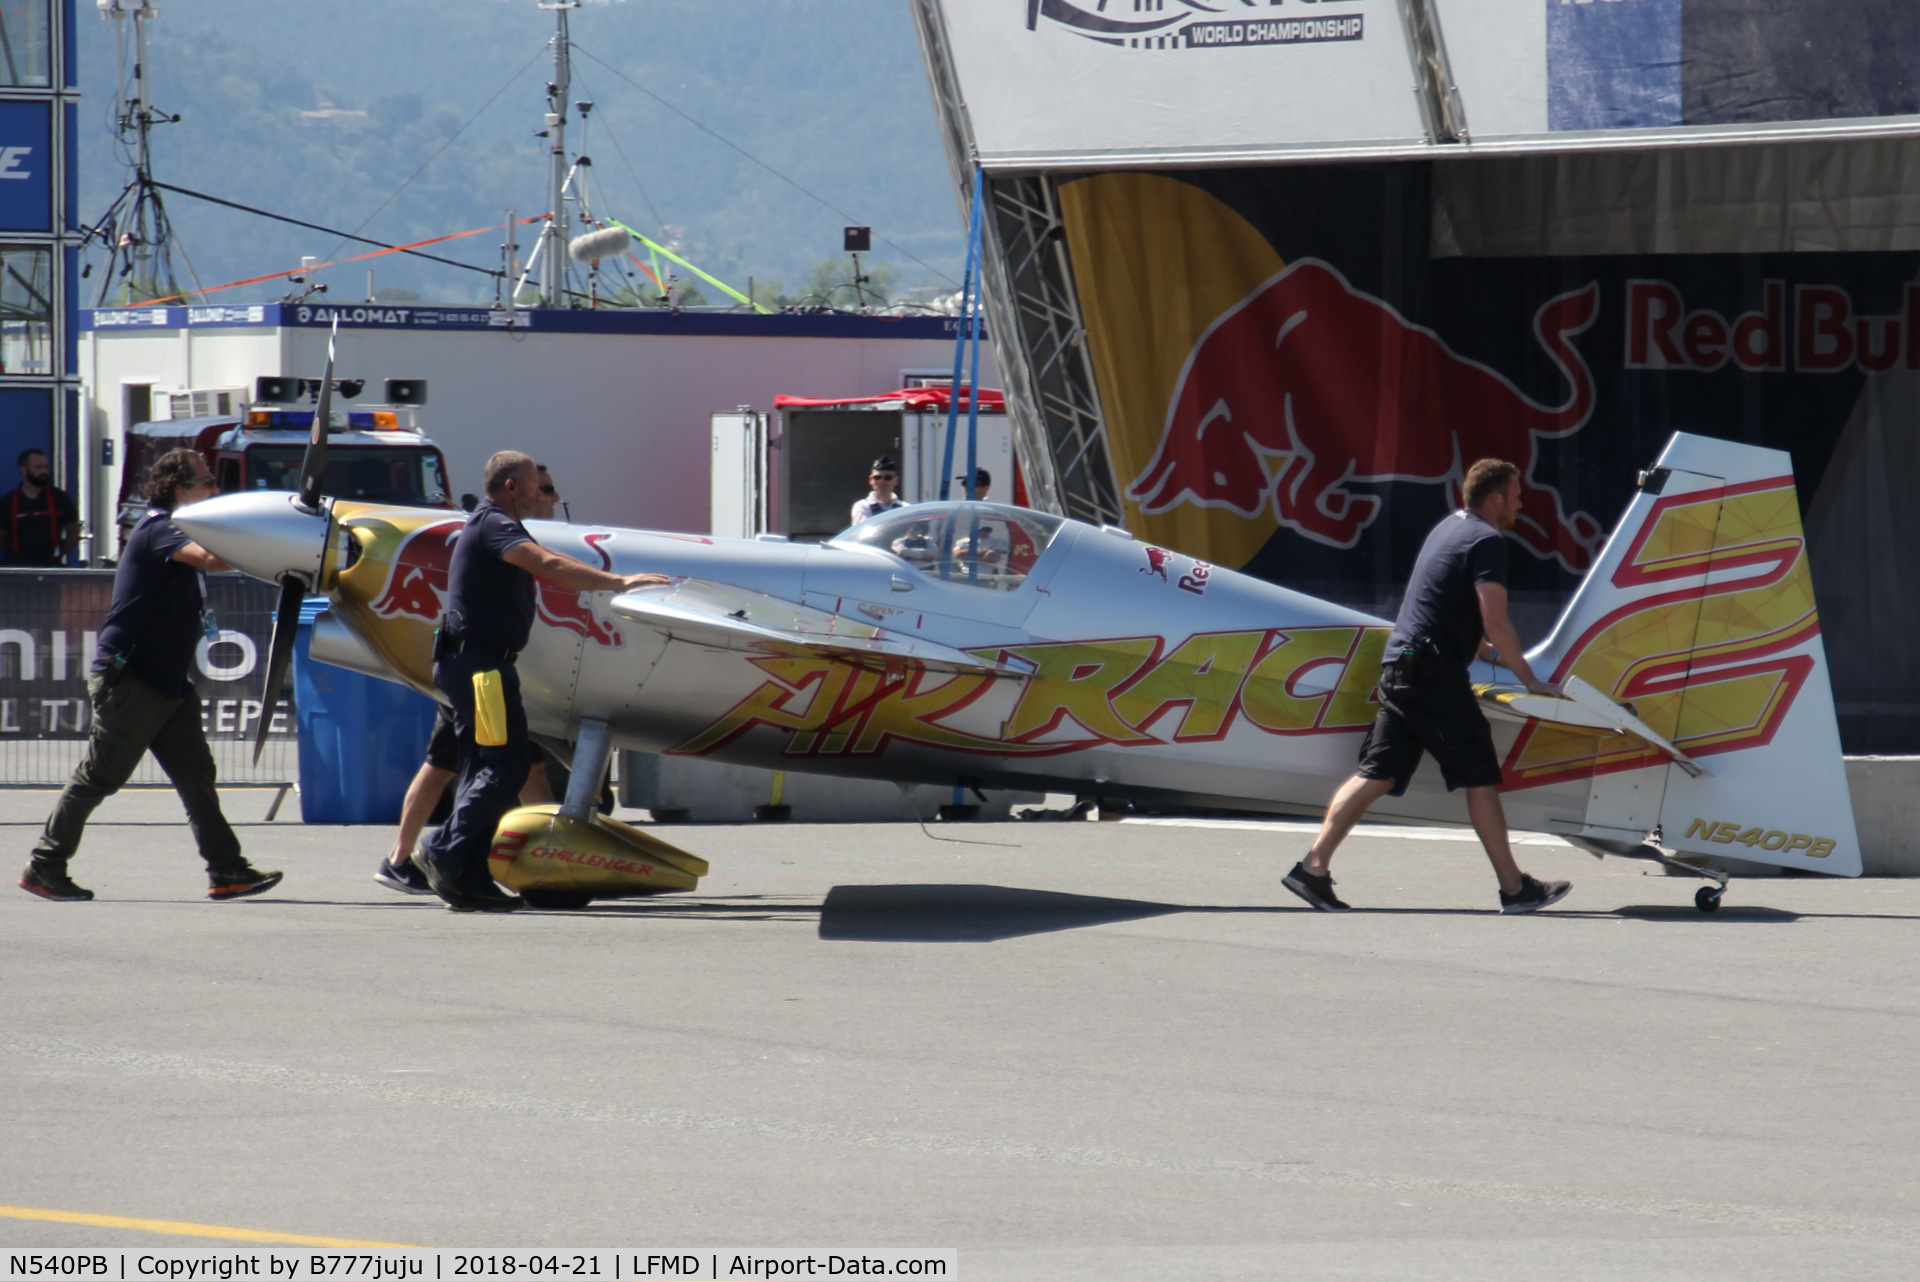 N540PB, 2006 Zivko Edge 540 C/N 0038A, Red Bull air Race Cannes 2018